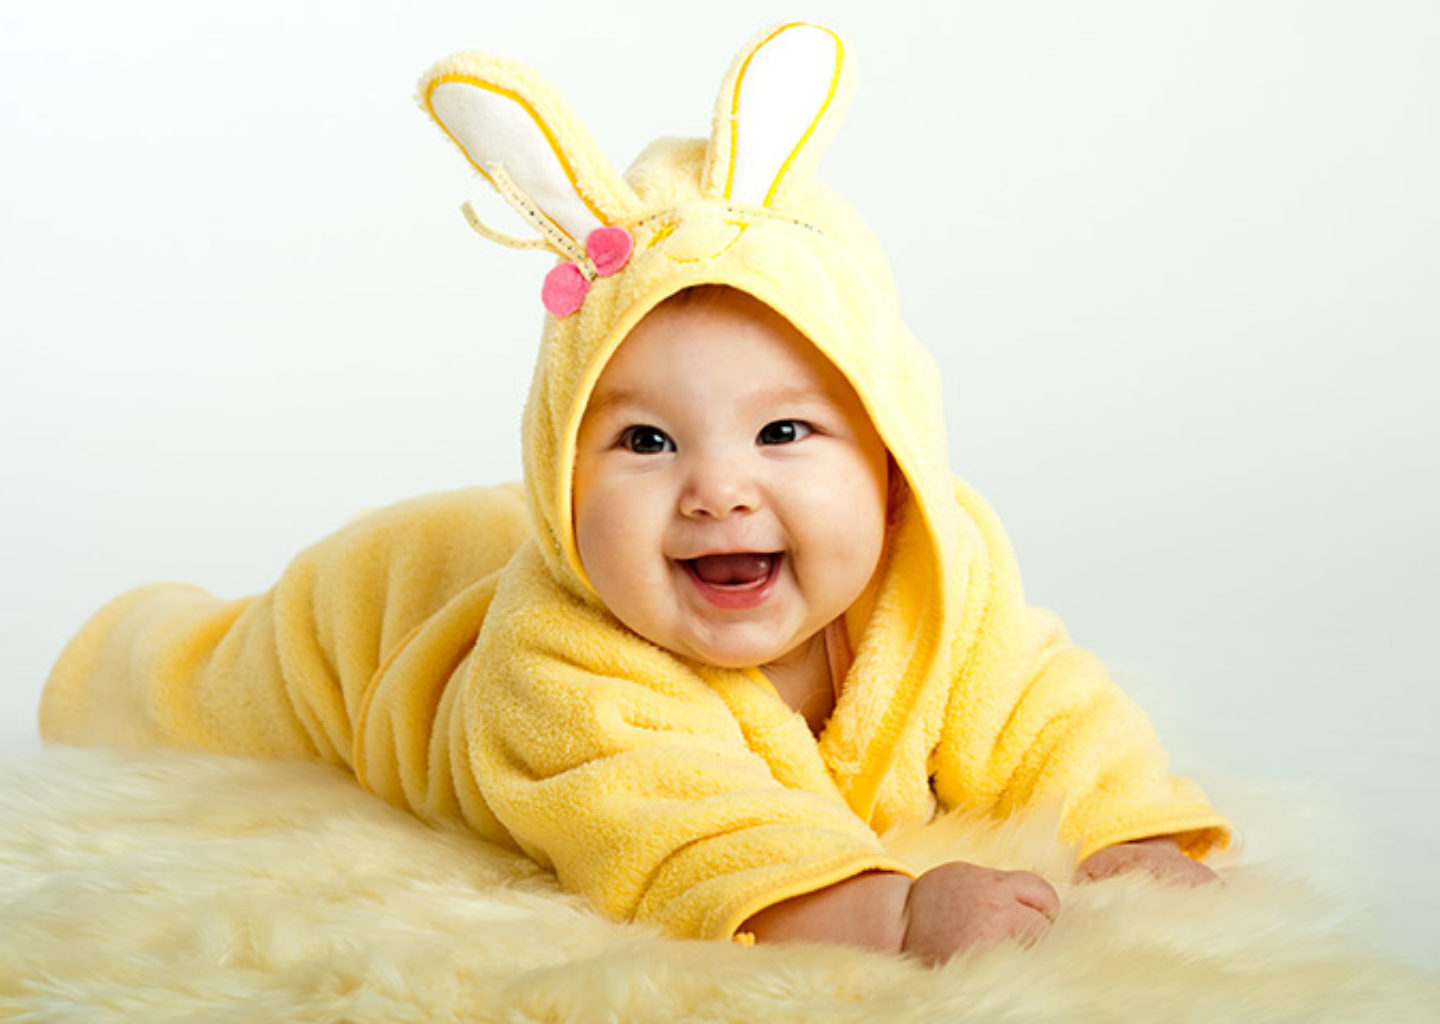 fonds d'écran bébé garçon pour mobile,enfant,jaune,bambin,oreille,tête